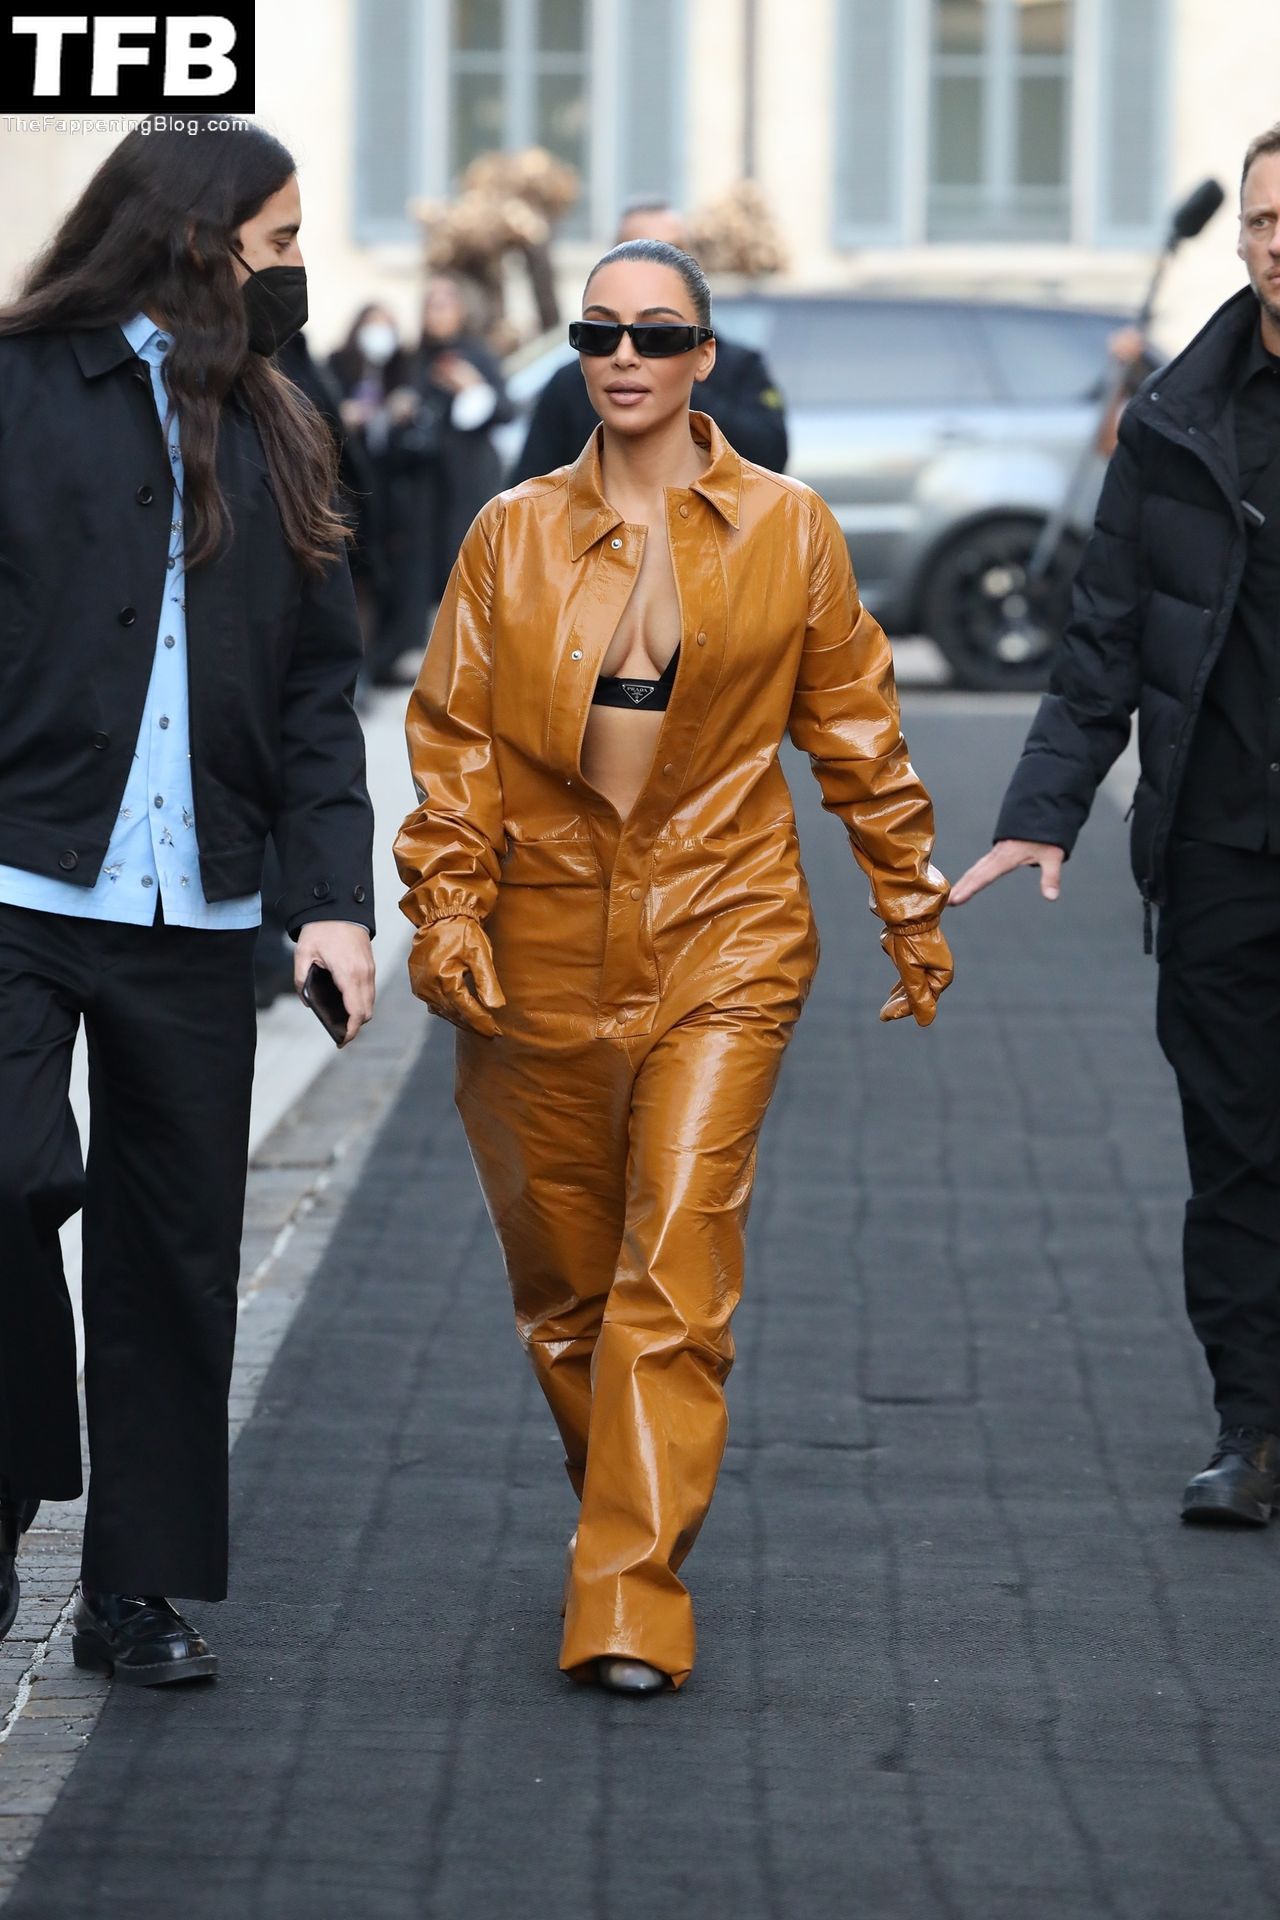 Kim-Kardashian-Sexy-The-Fappening-Blog-24.jpg